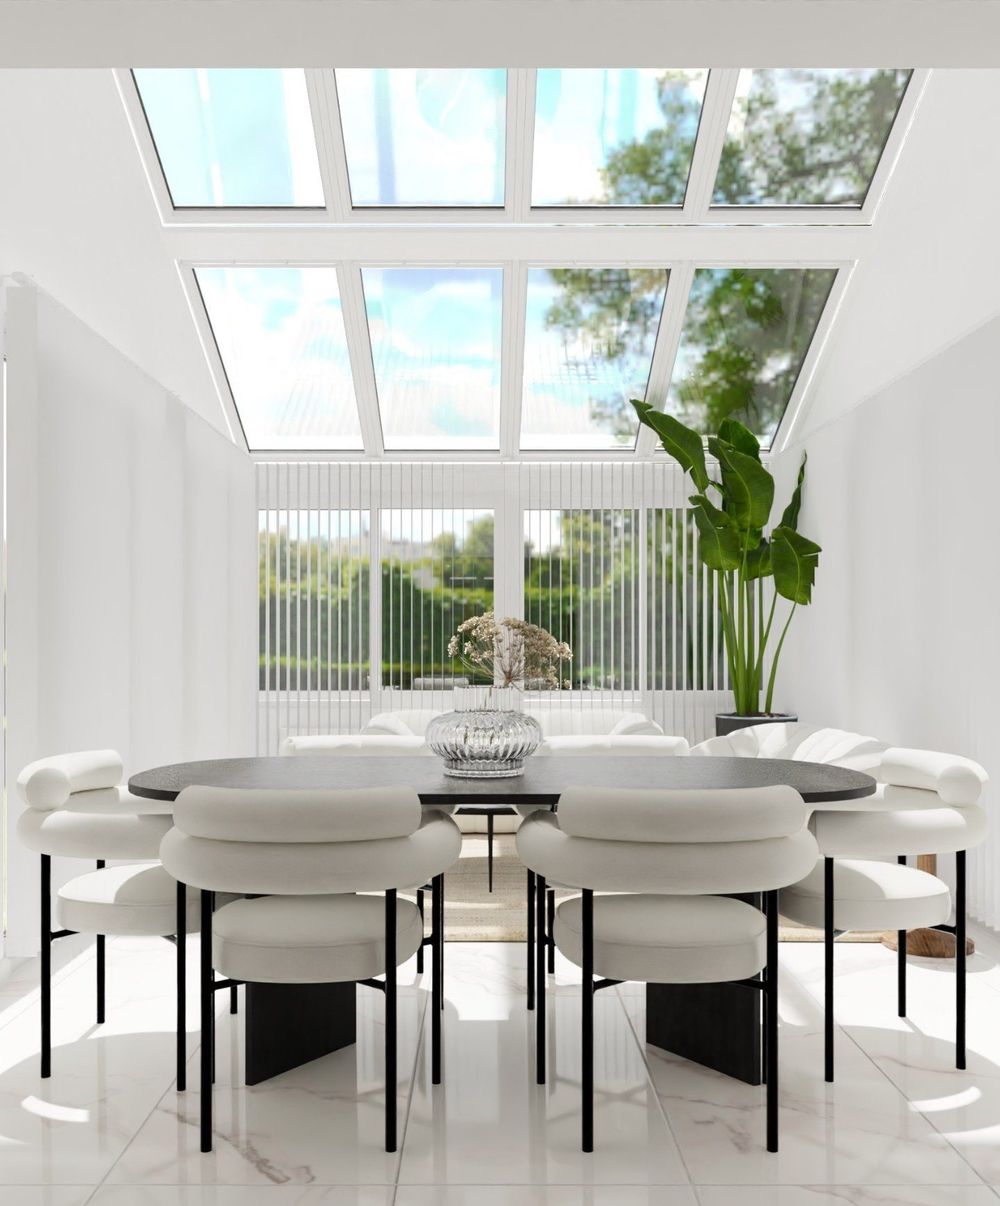 Contemporary dining room design ideas homebyme